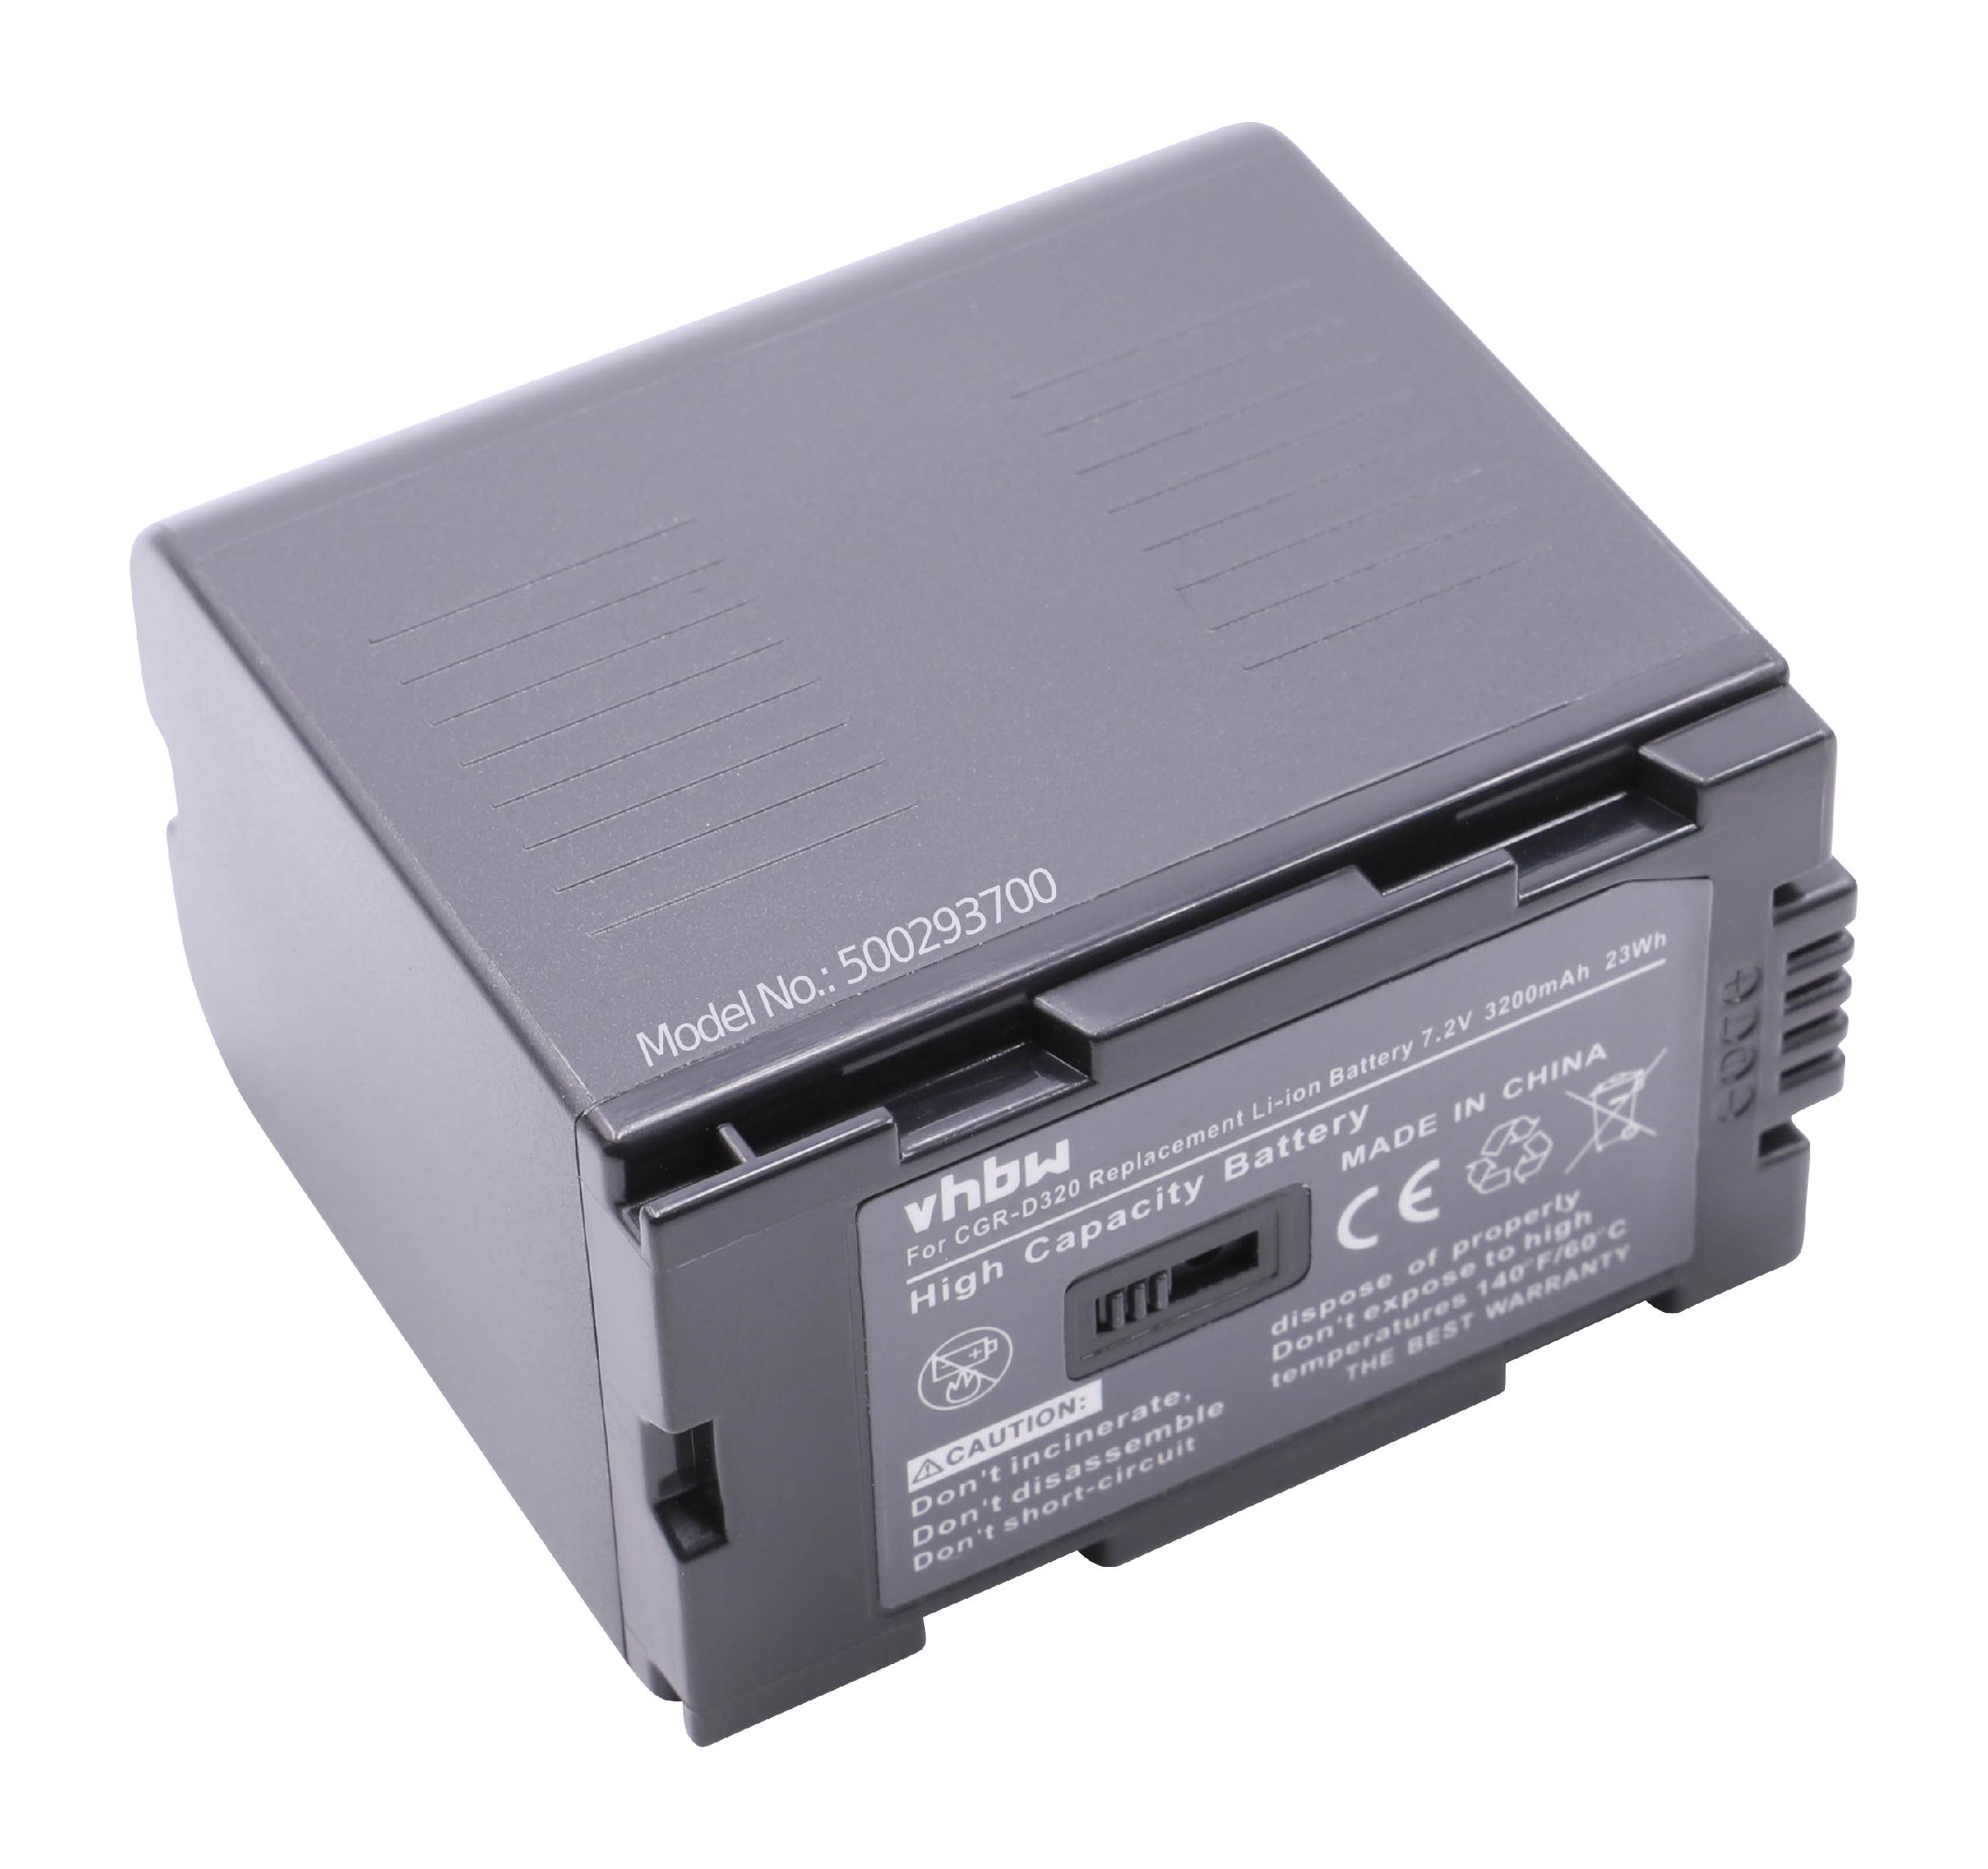 7.2 Hitachi Akku 3200 - VHBW für für Videokamera, DZ-BP16, Li-Ion Ersatz DZ-BP28 Volt,